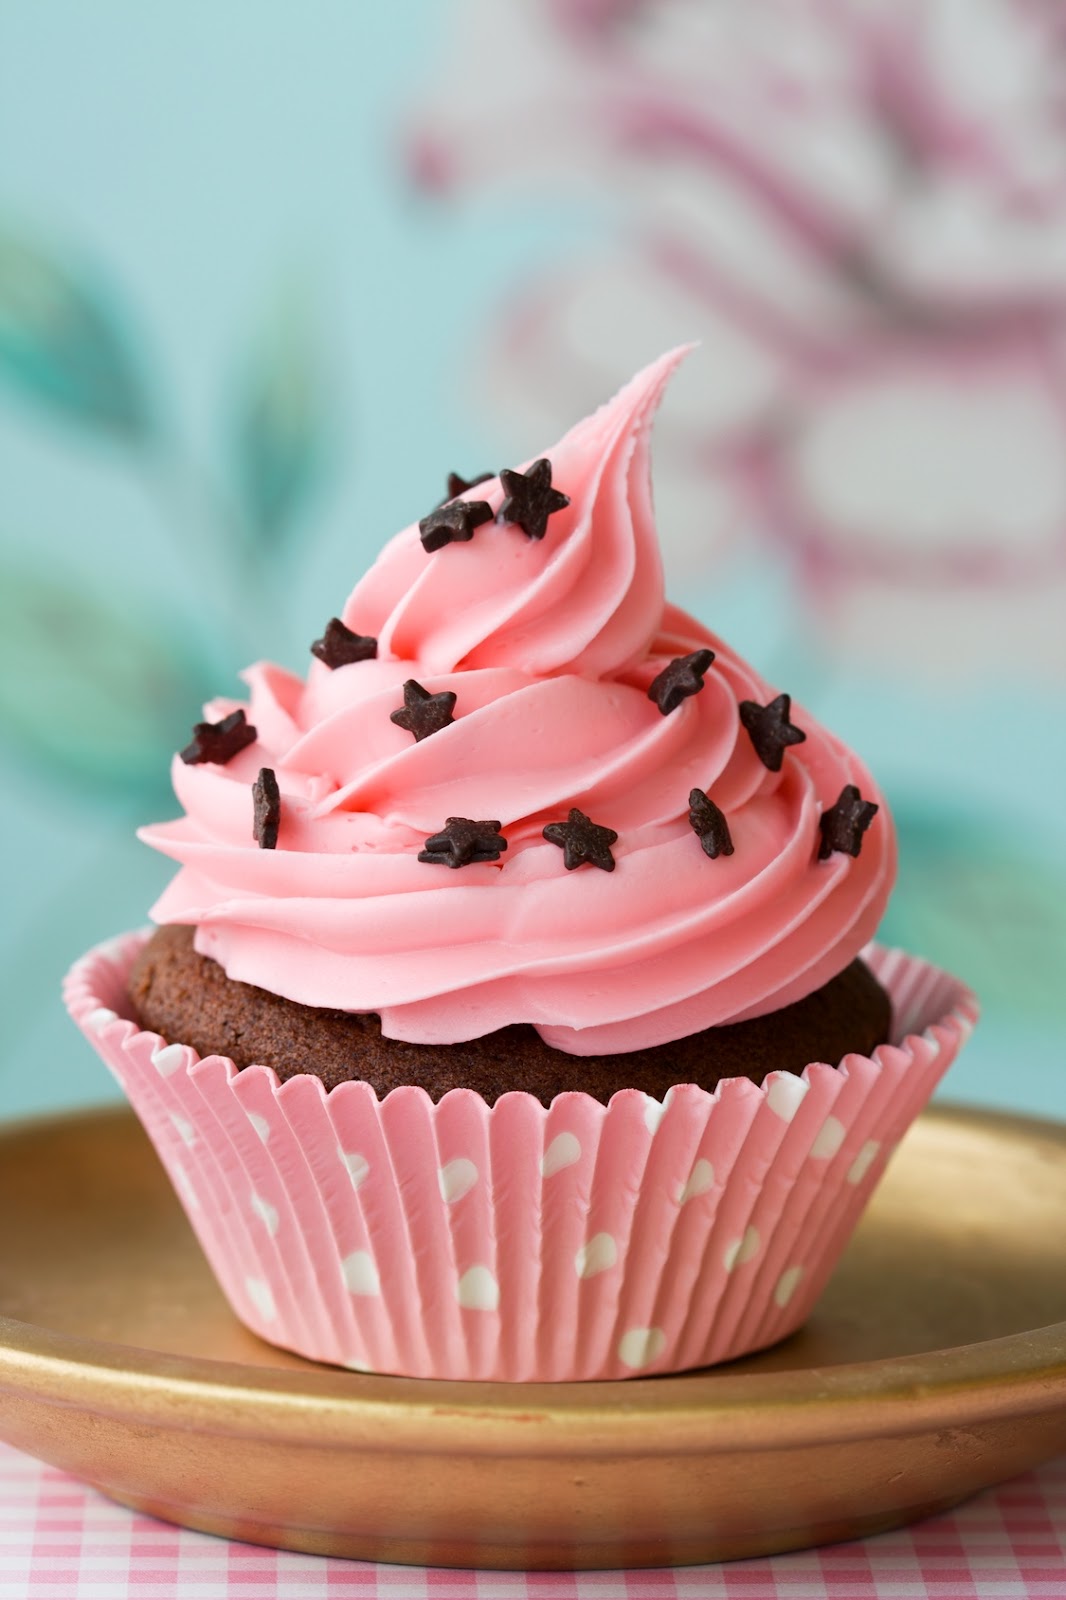 Cute As A Cupcake: Pretty Pink Cupcakes